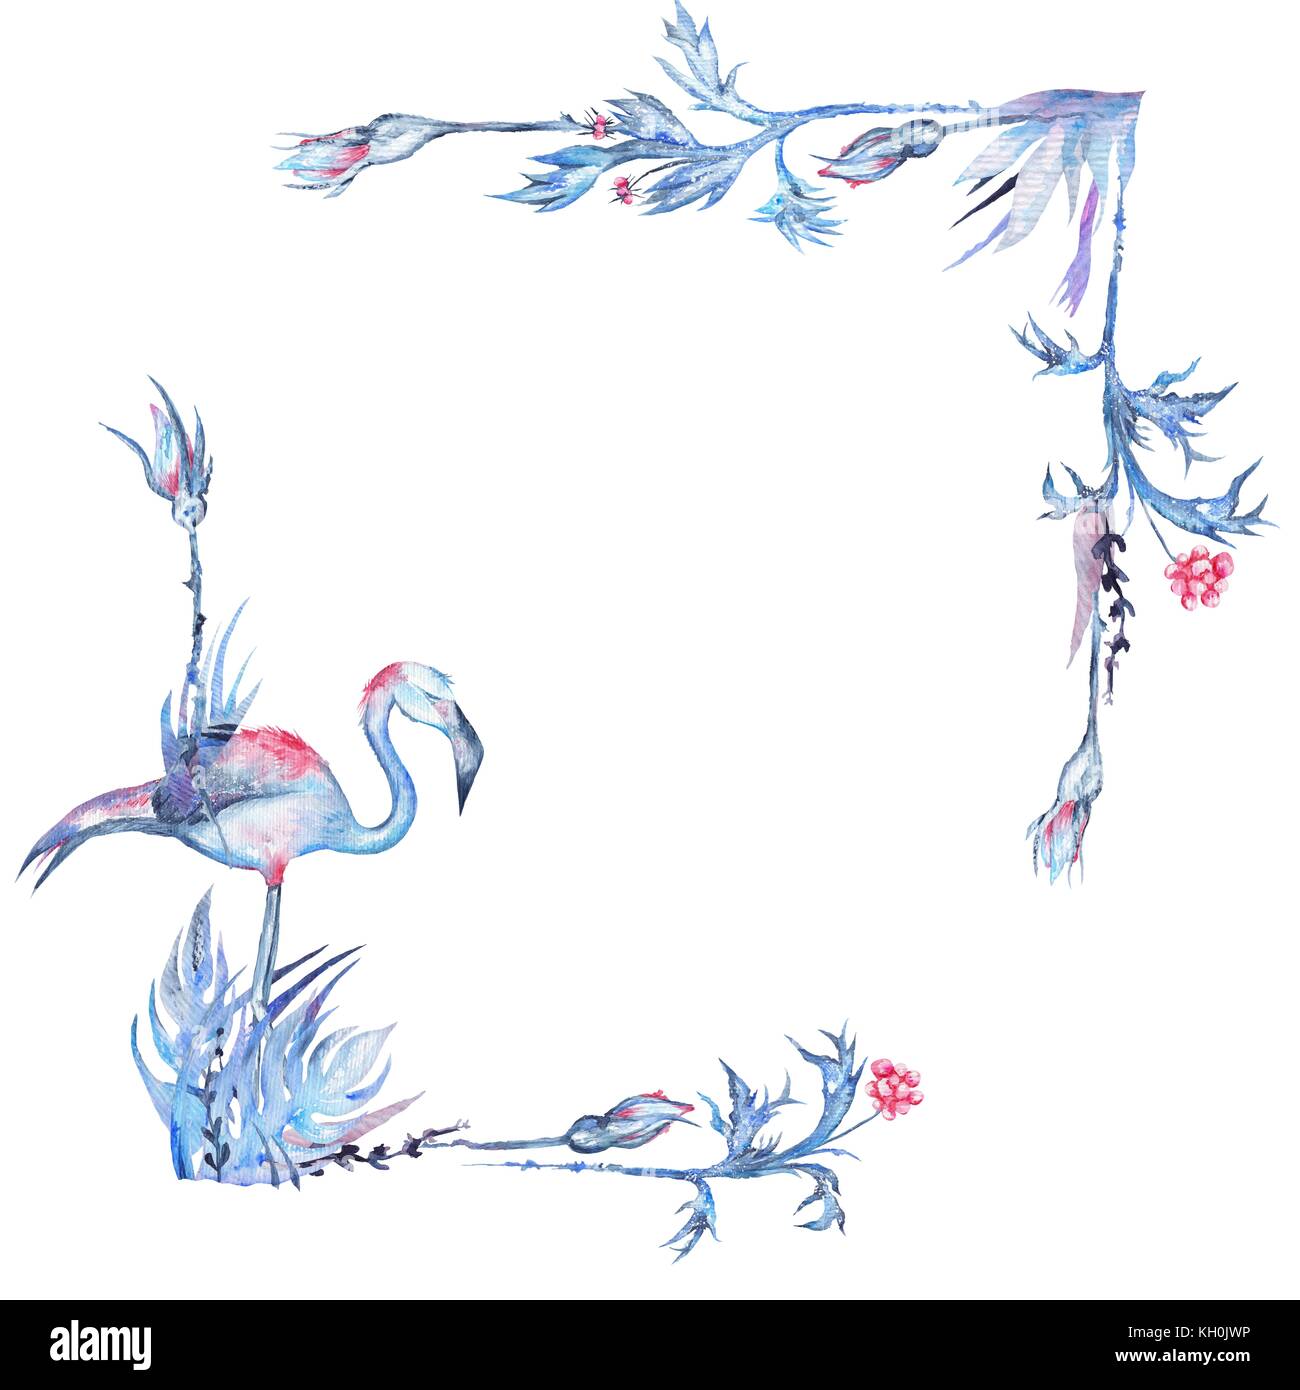 Blau exotische Karte Vorlage mit Palmblättern, Rosenknospen und Flamingo Vögel auf weißem Hintergrund Stockfoto